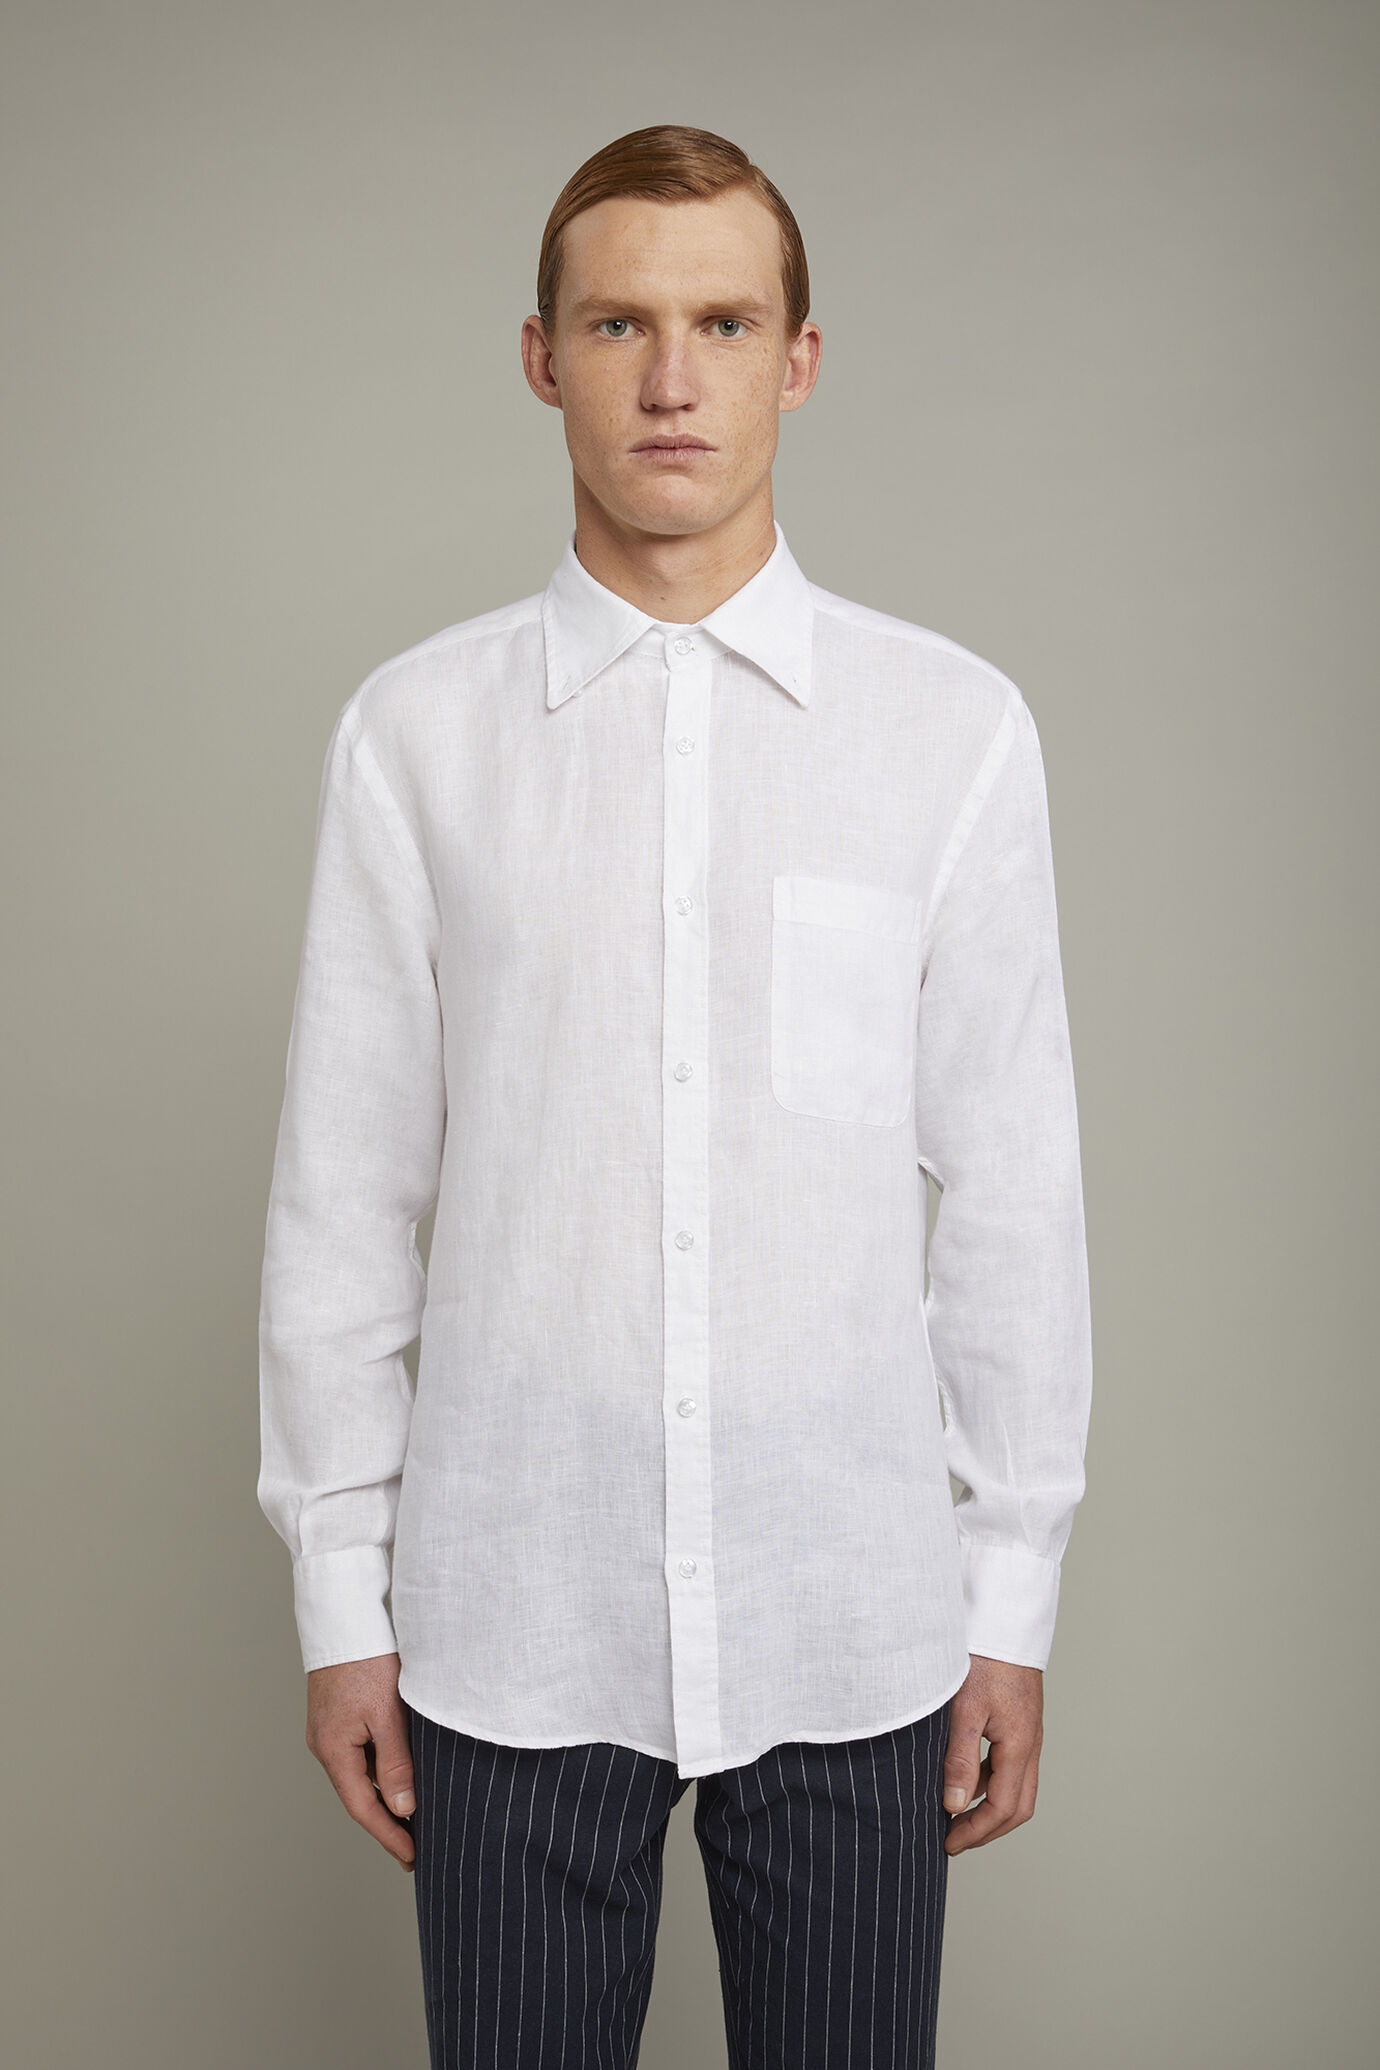 Men’s casual shirt button down collar 100% linen comfort fit